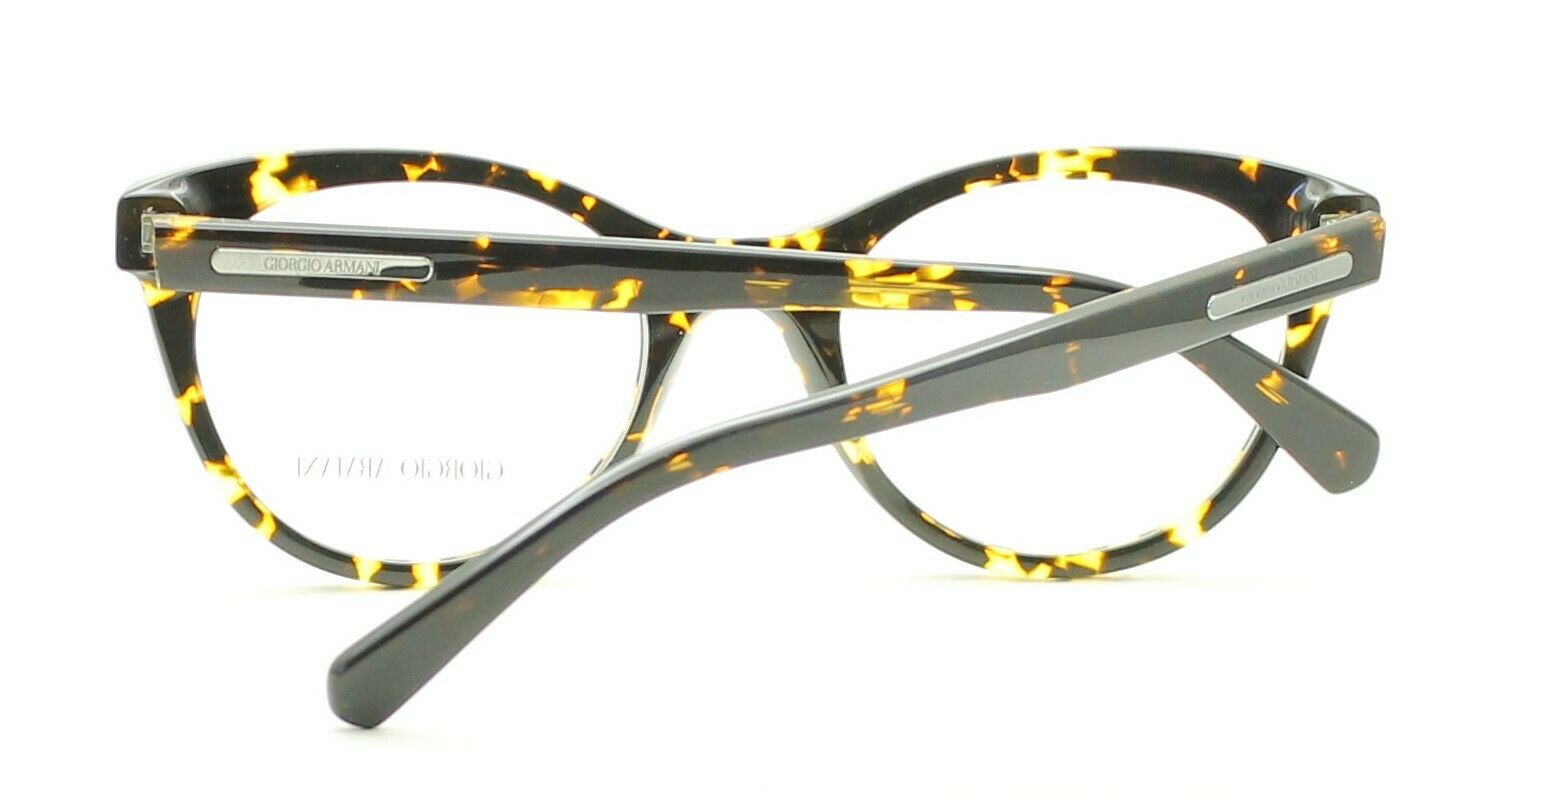 GIORGIO ARMANI AR 7048 5294 Eyewear FRAMES Eyeglasses RX Optical Glasses - ITALY